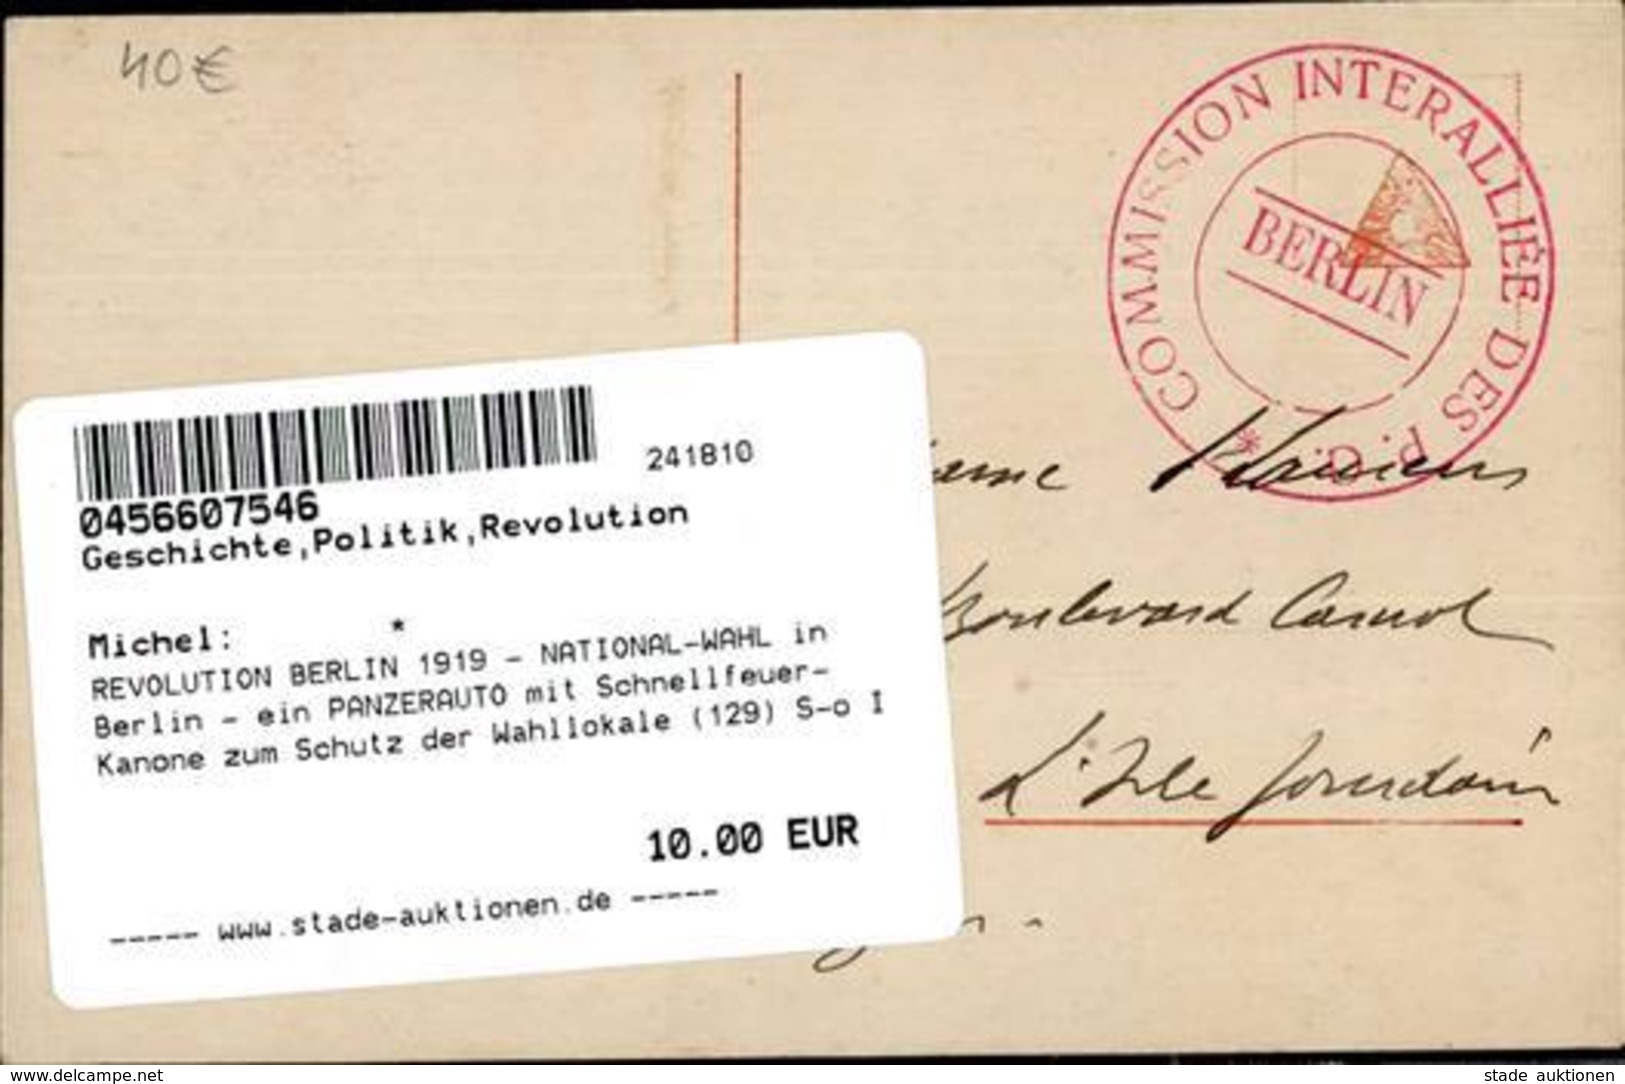 REVOLUTION BERLIN 1919 - NATIONAL-WAHL In Berlin - Ein PANZERAUTO Mit Schnellfeuer-Kanone Zum Schutz Der Wahllokale (129 - Krieg